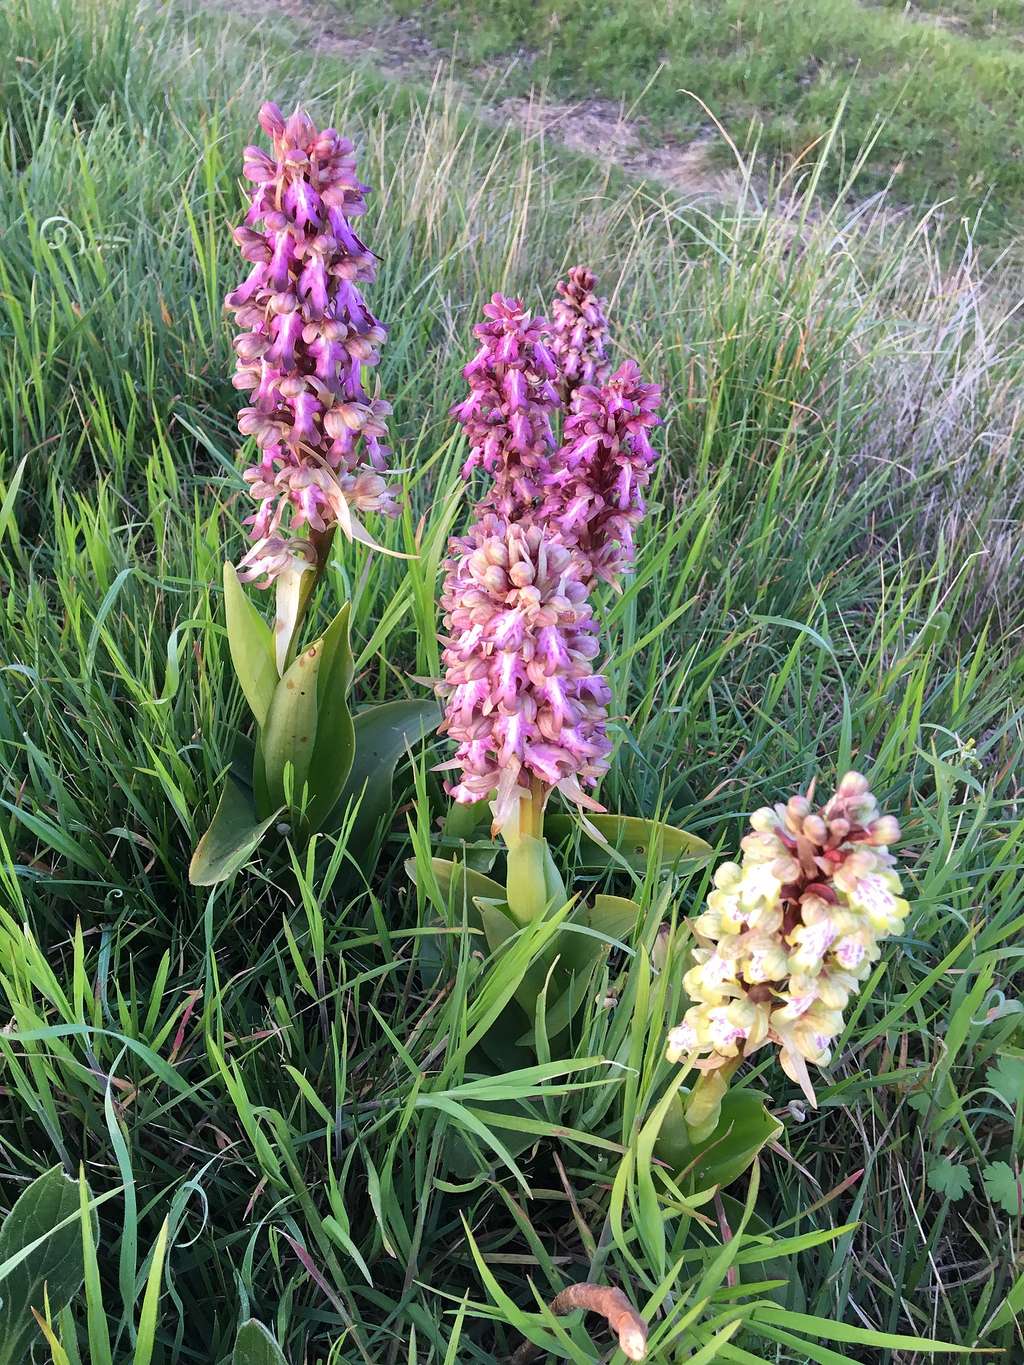  Bien différente des espèces vendue en jardinerie, l'orchidée <em>Himantoglossum robertianum,</em> est une plante vigoureuse et robuste qui ne dépasse pas 50 cm habituellement.<em> </em>© RuB (Ruddy Bénézet), <em>Wikimedia Commons</em>, CC by-sa 4.0